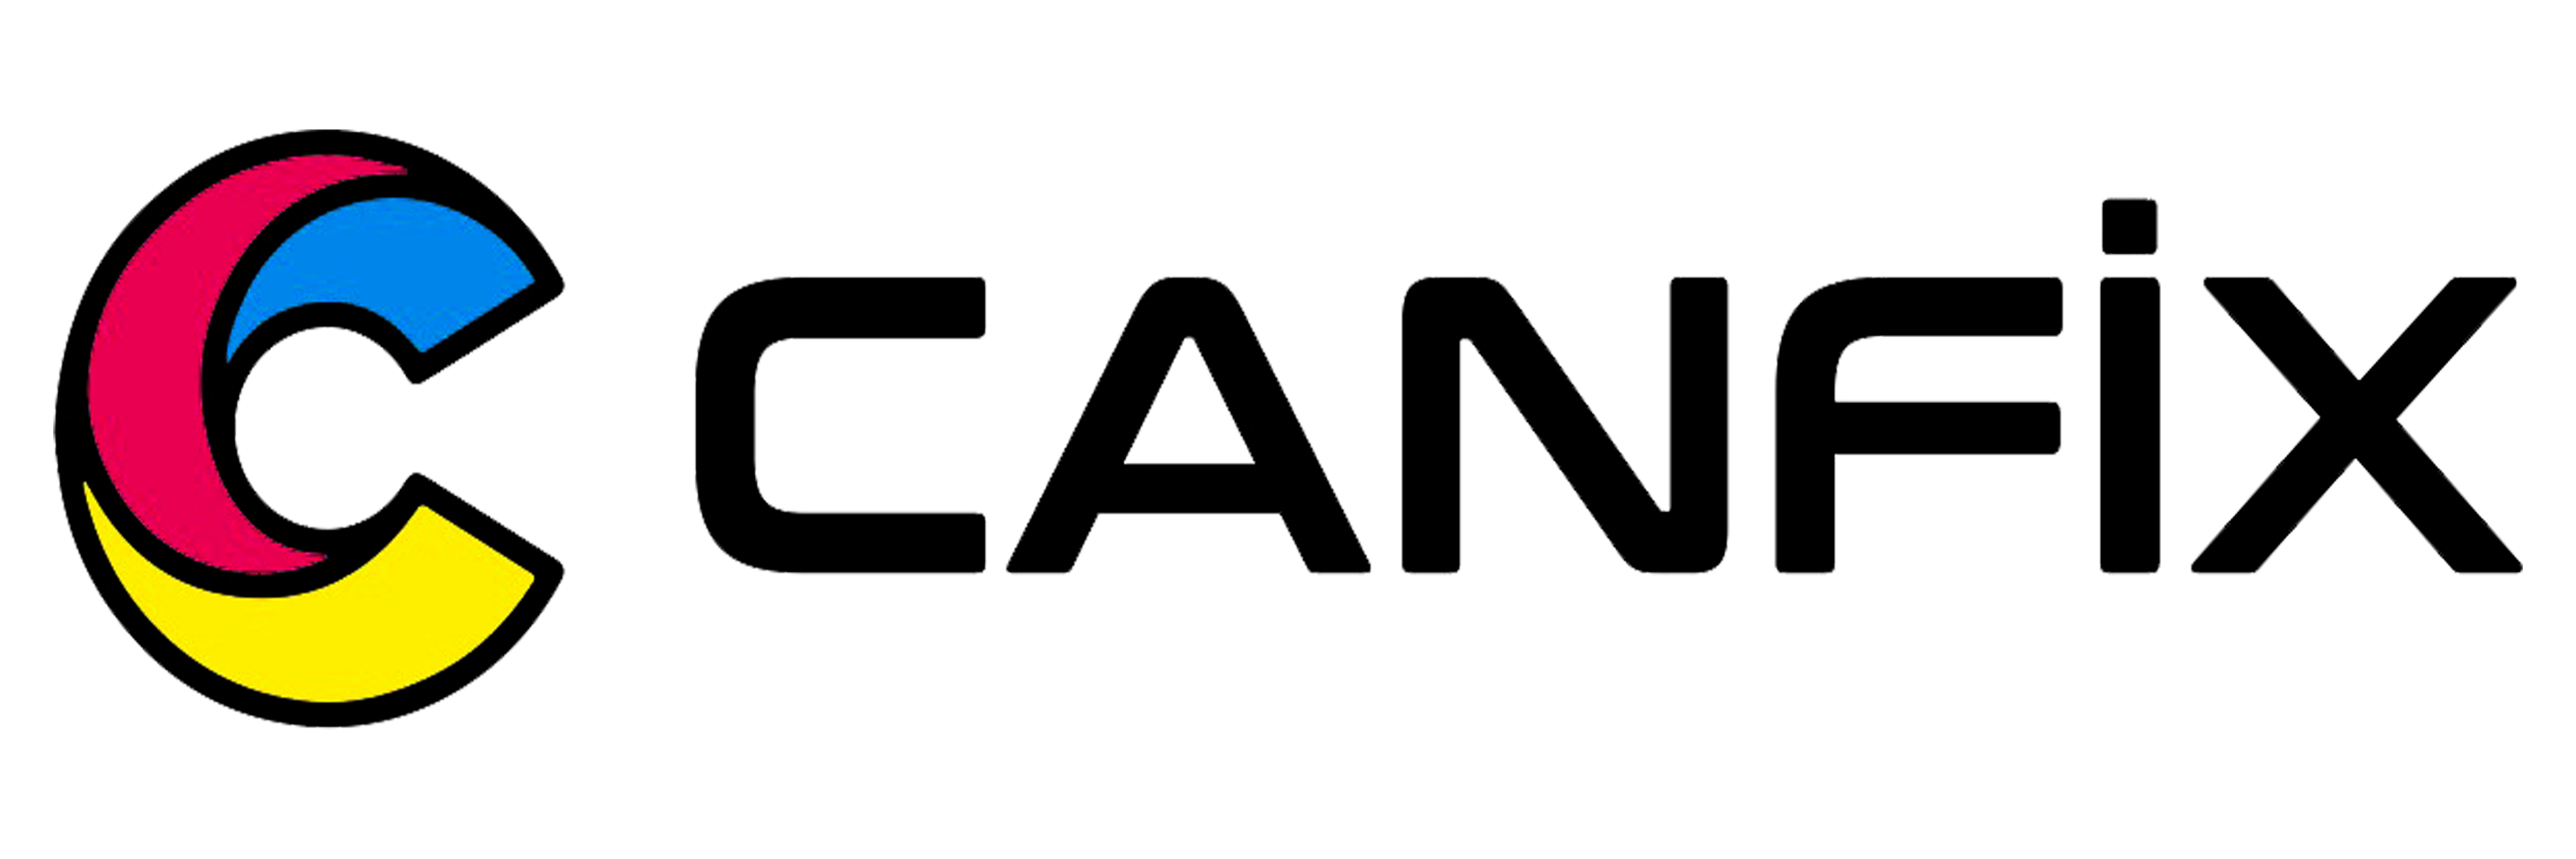 Canfix.com.tr | Lazer (Laser) Etiket